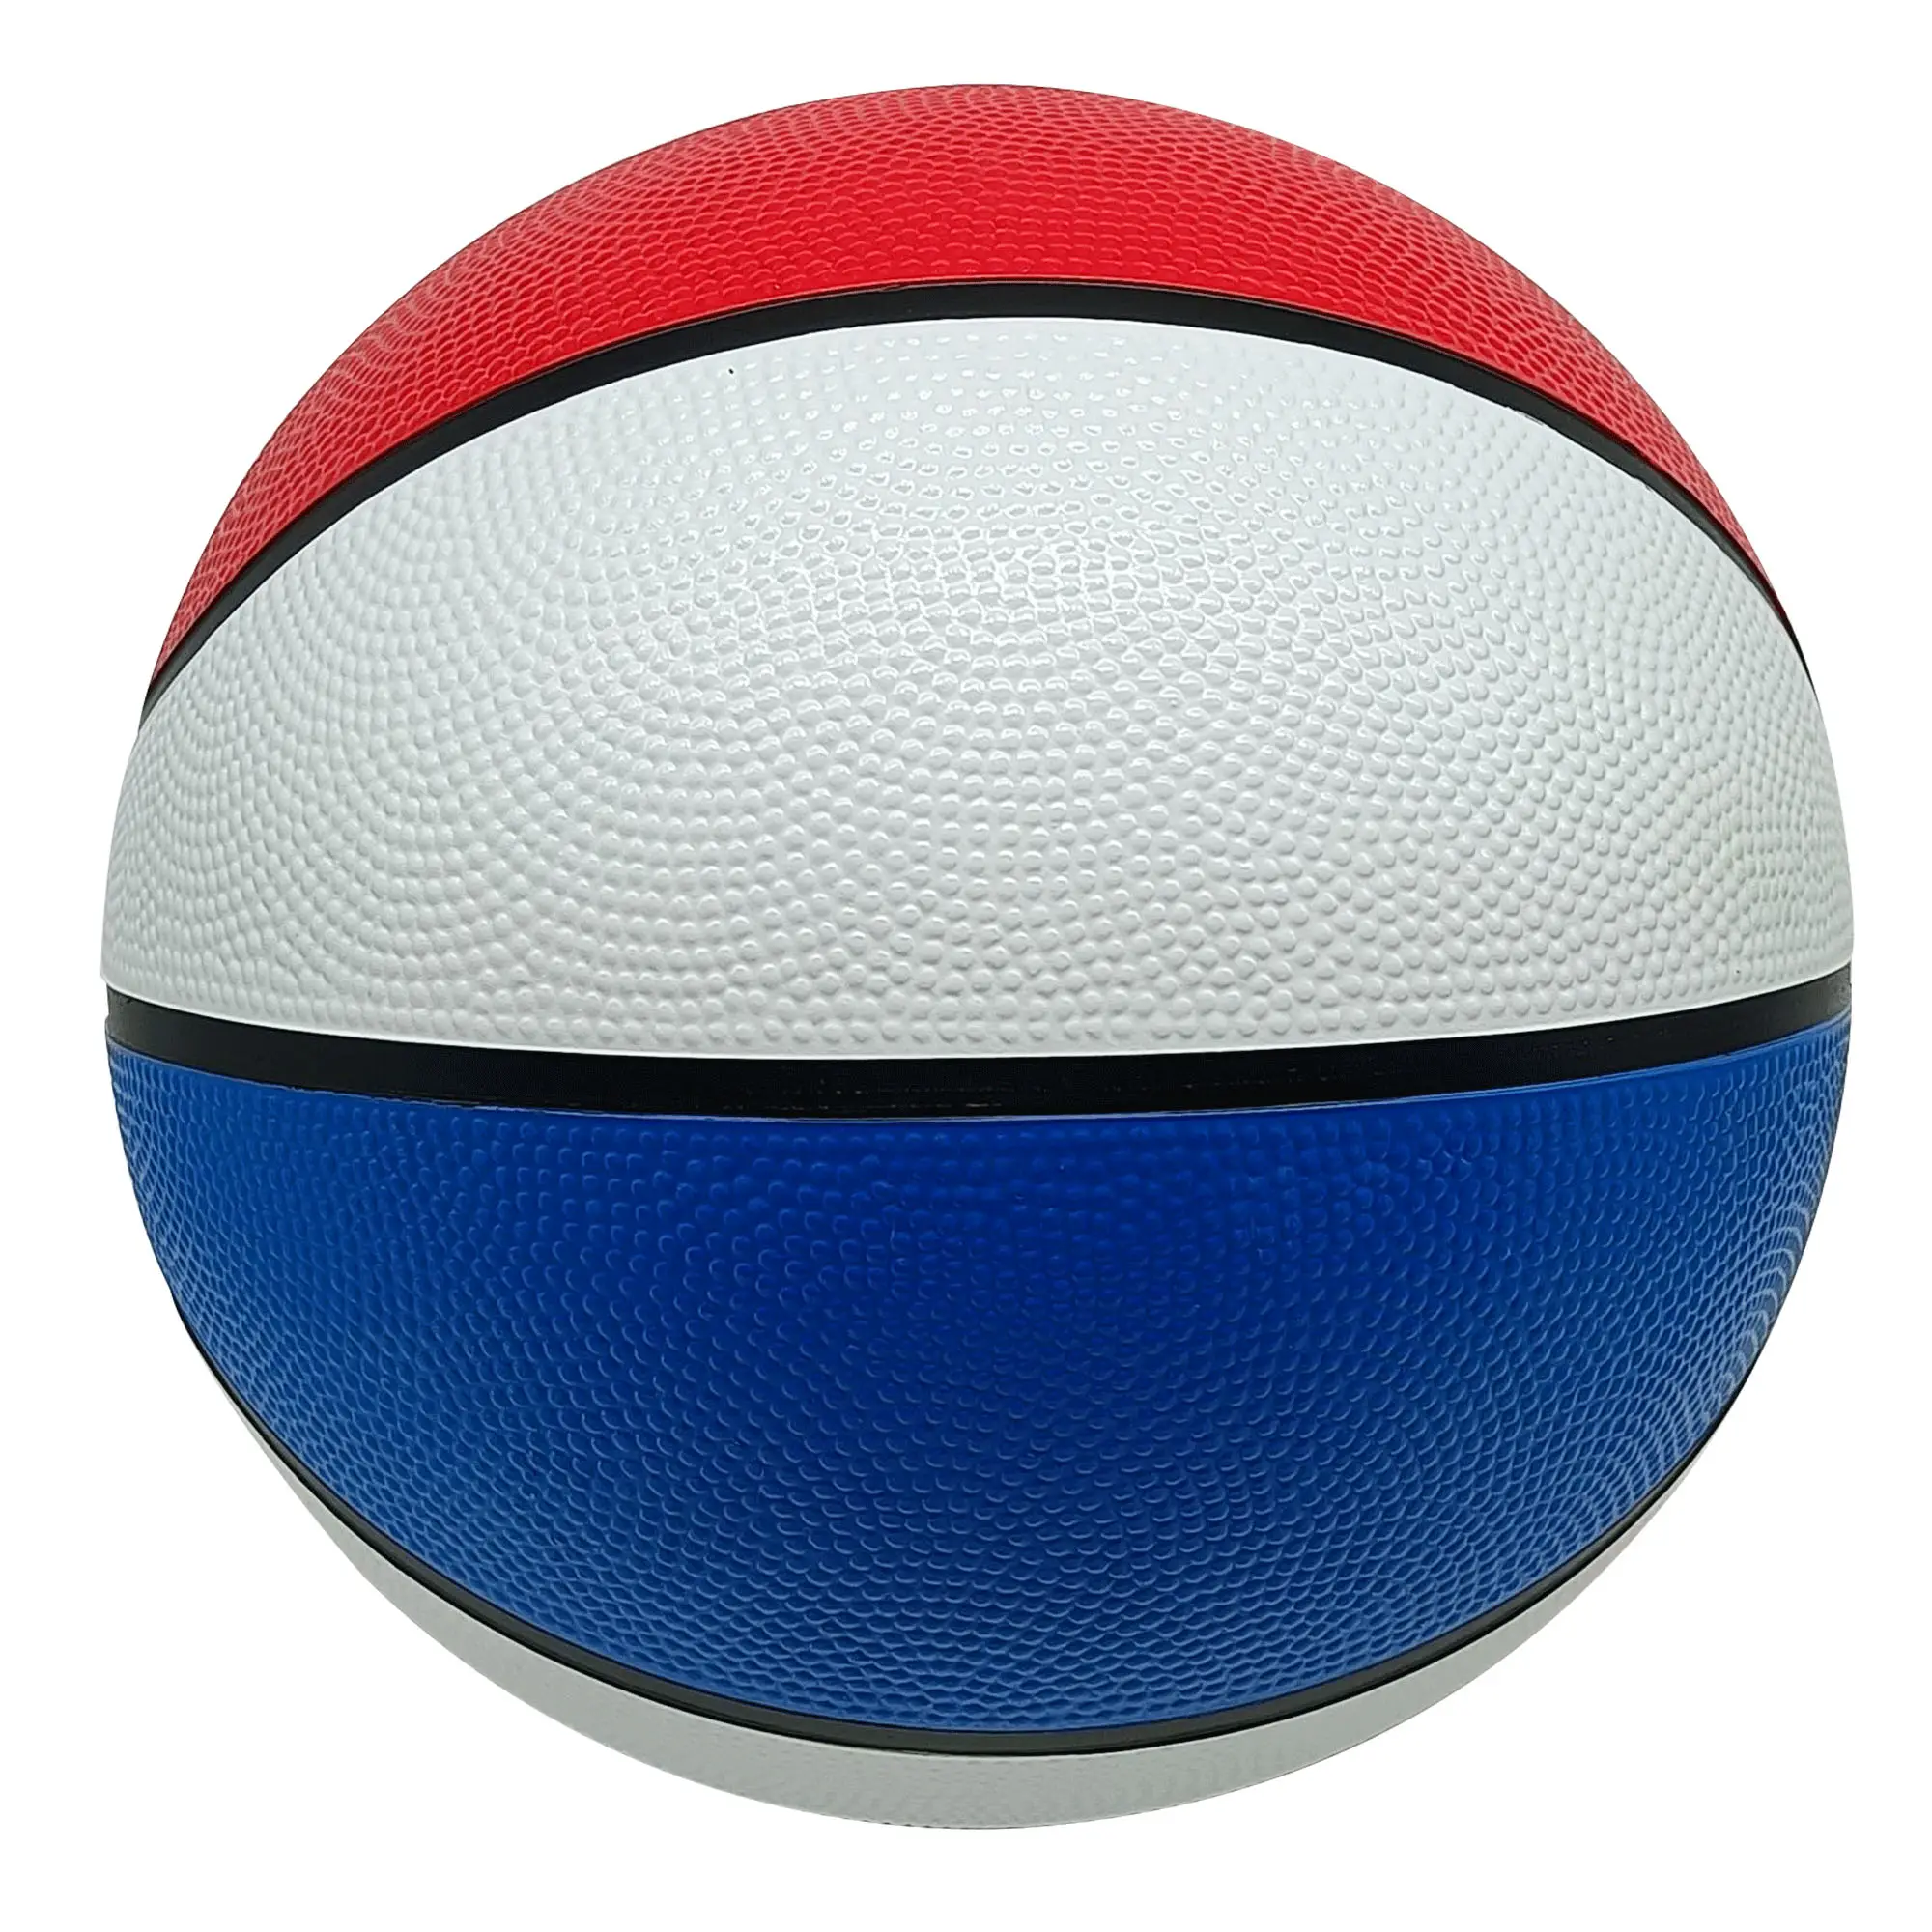 고무 주문 ballon 농구 도매/크기 7 baloncesto/실내 옥외 제조자 본래 공 농구